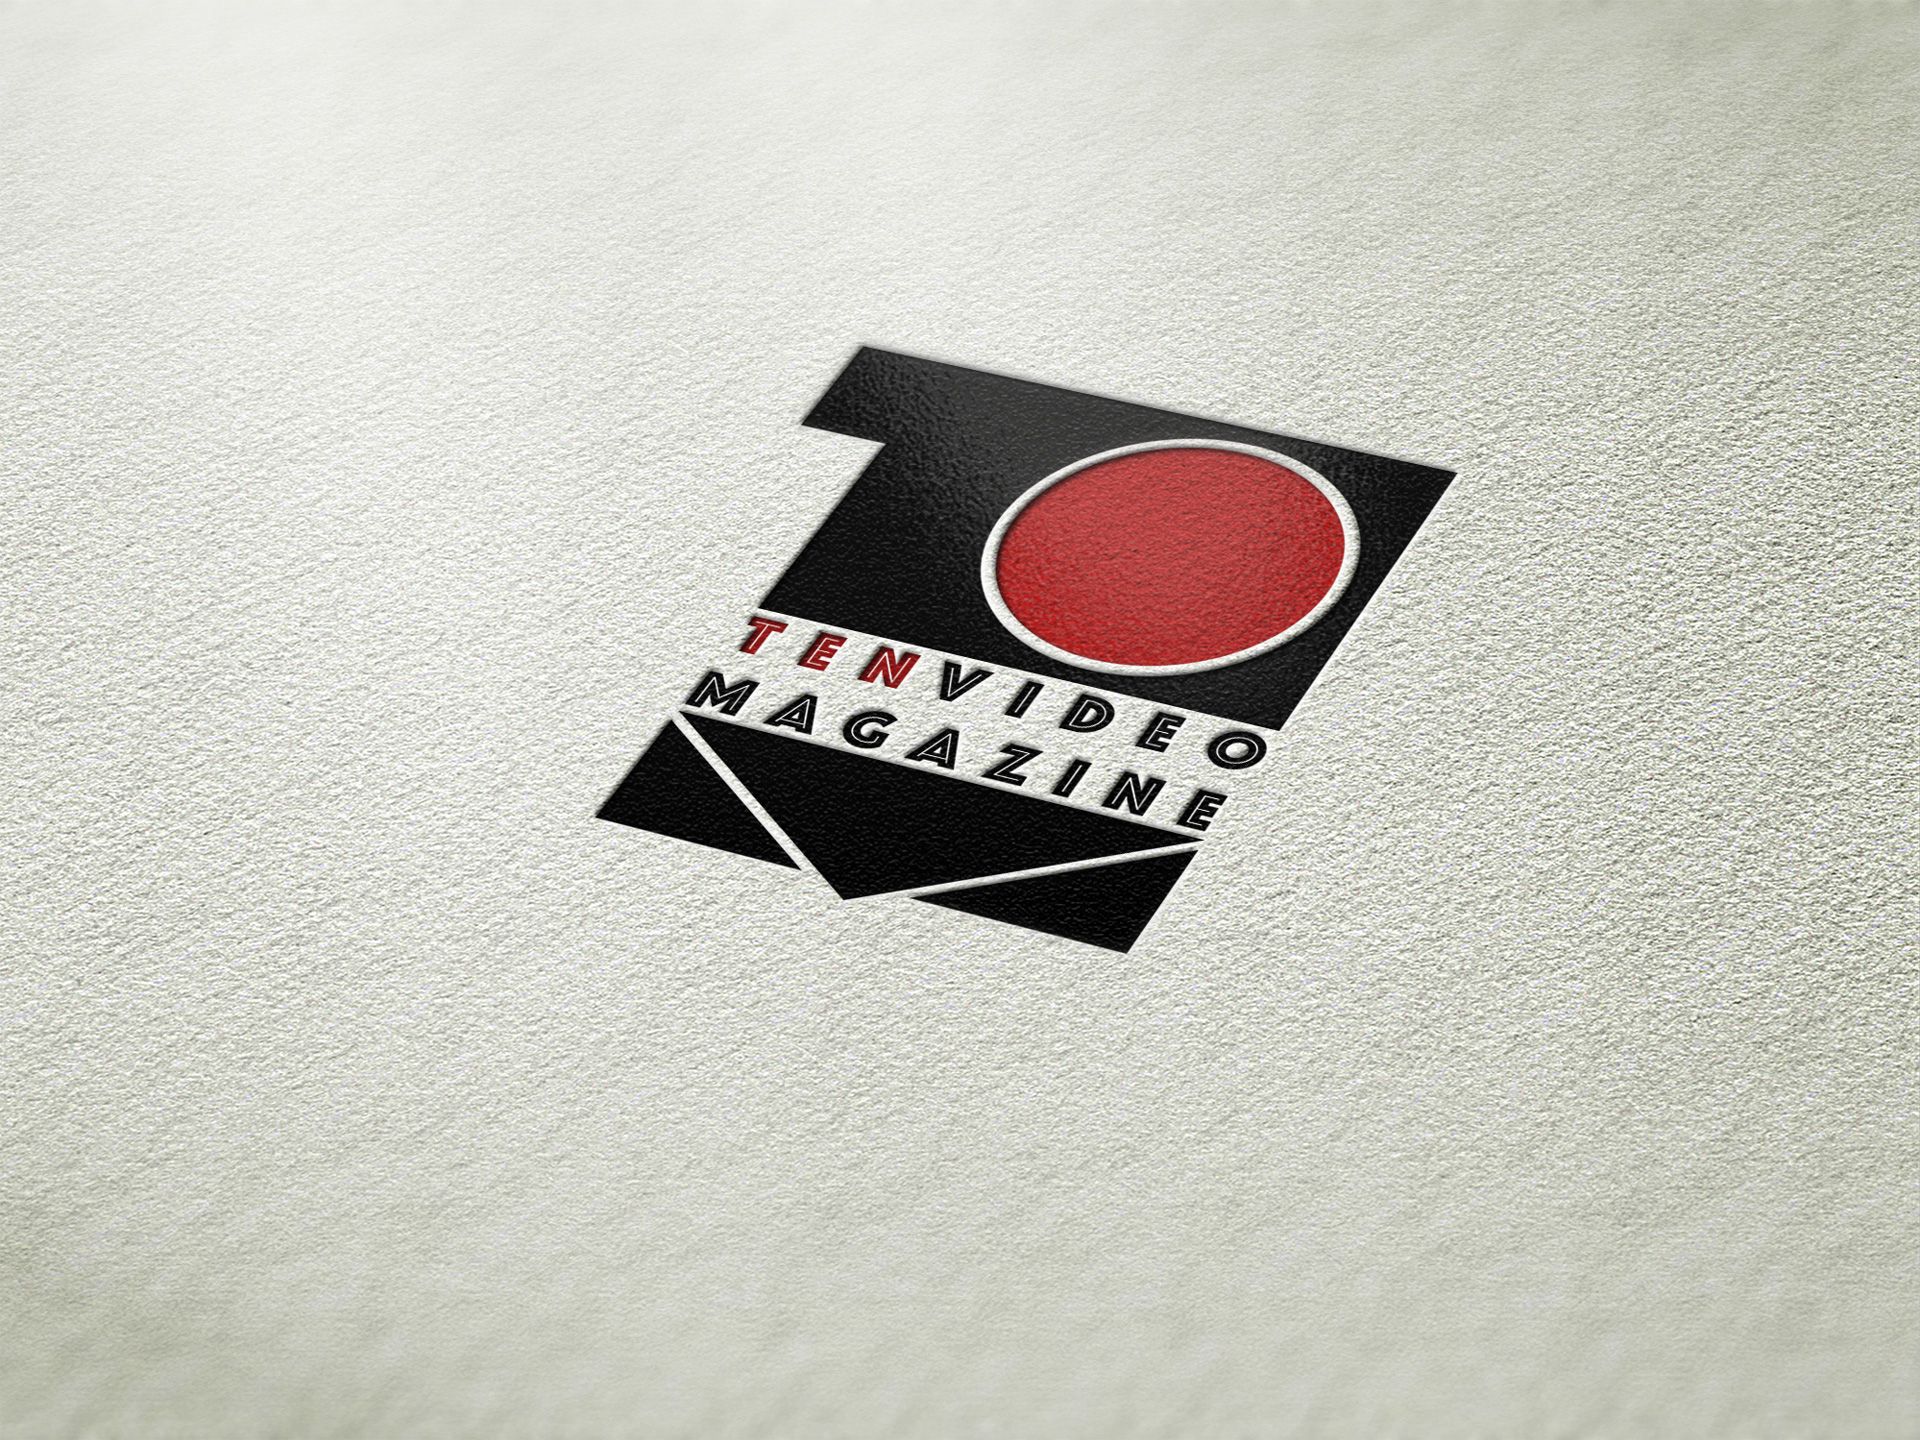 Разработка логотипа для видео журнала - дизайнер Advokat72